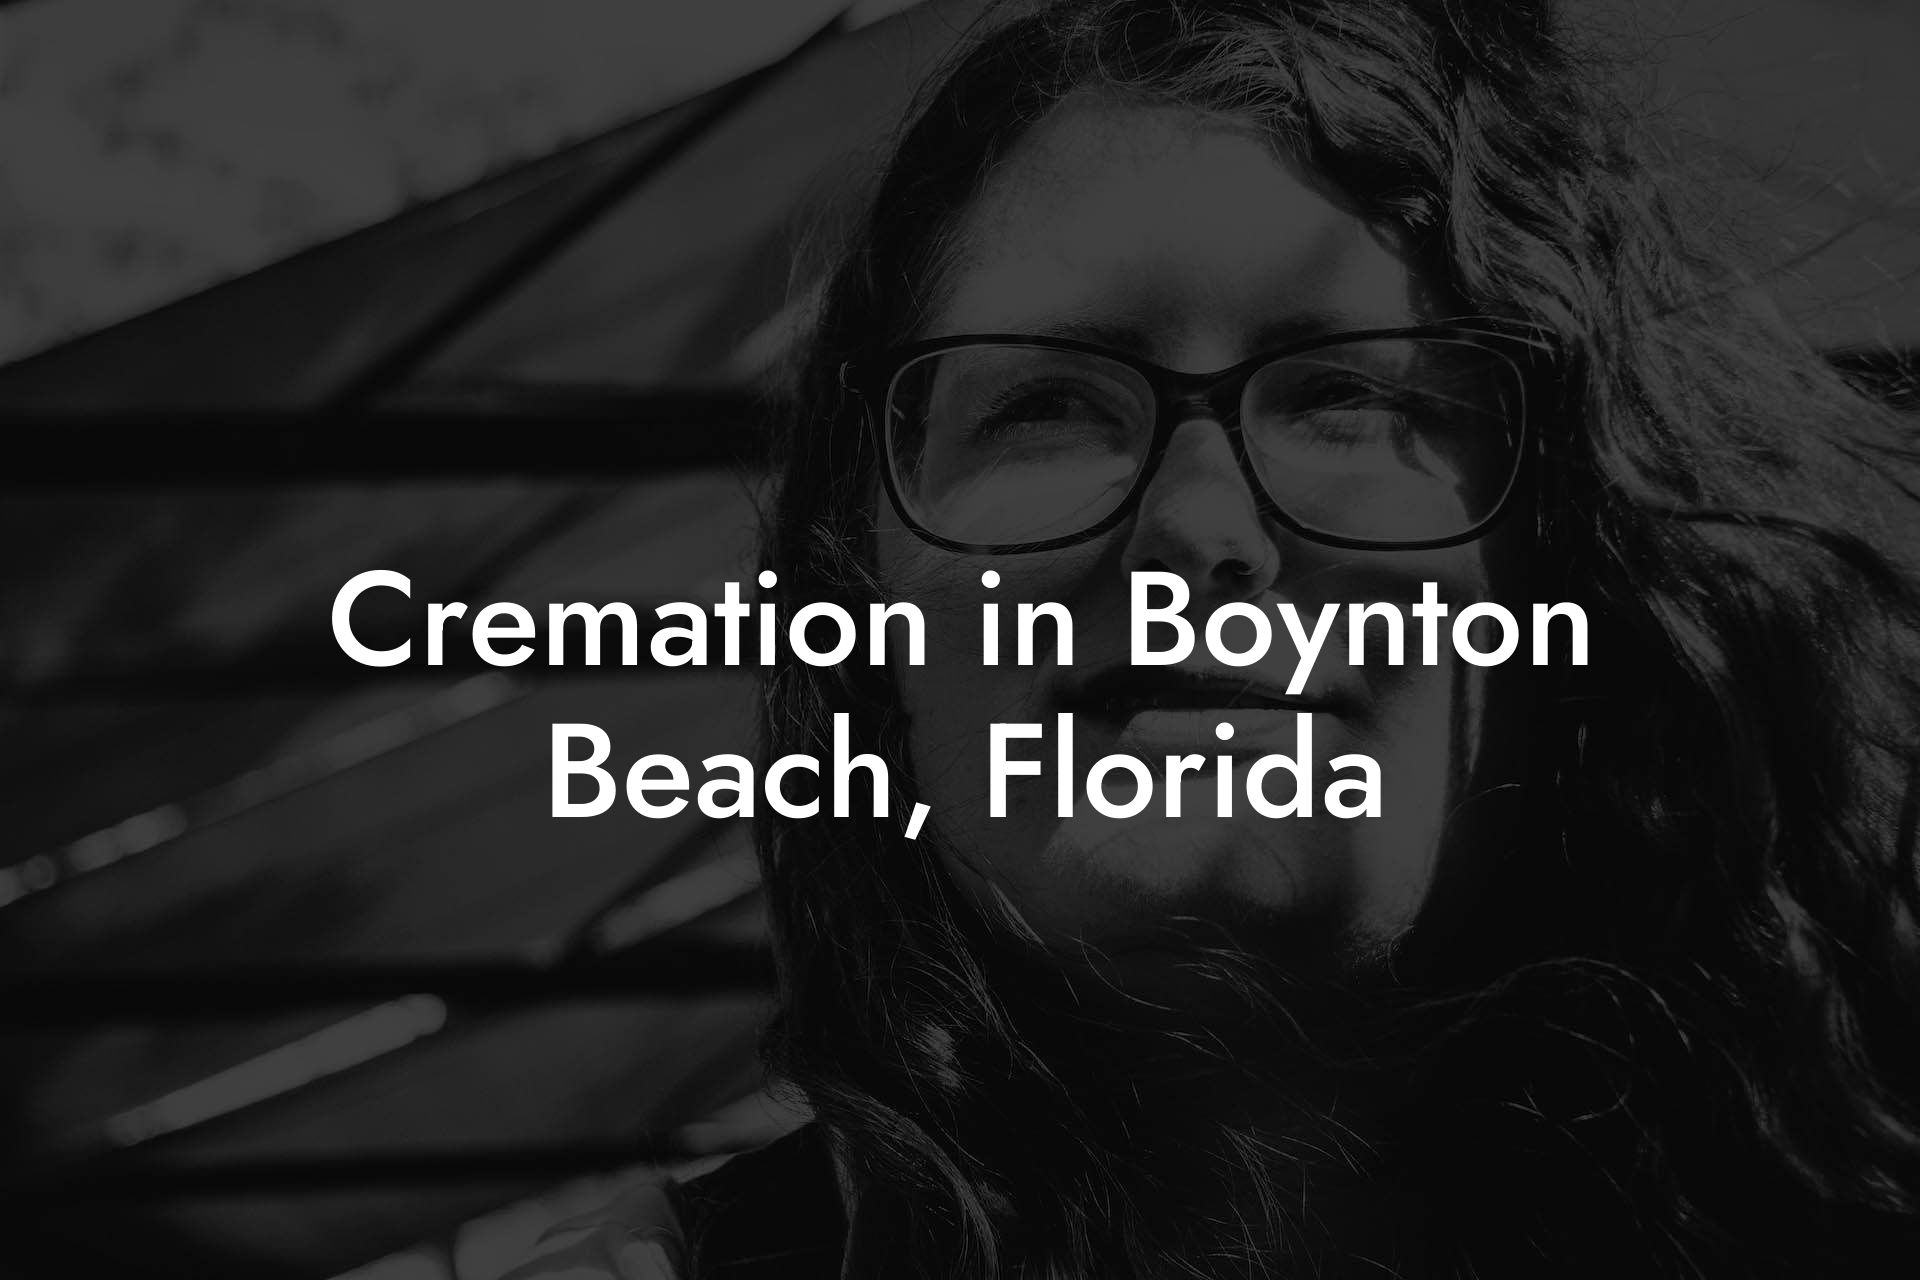 Cremation in Boynton Beach, Florida